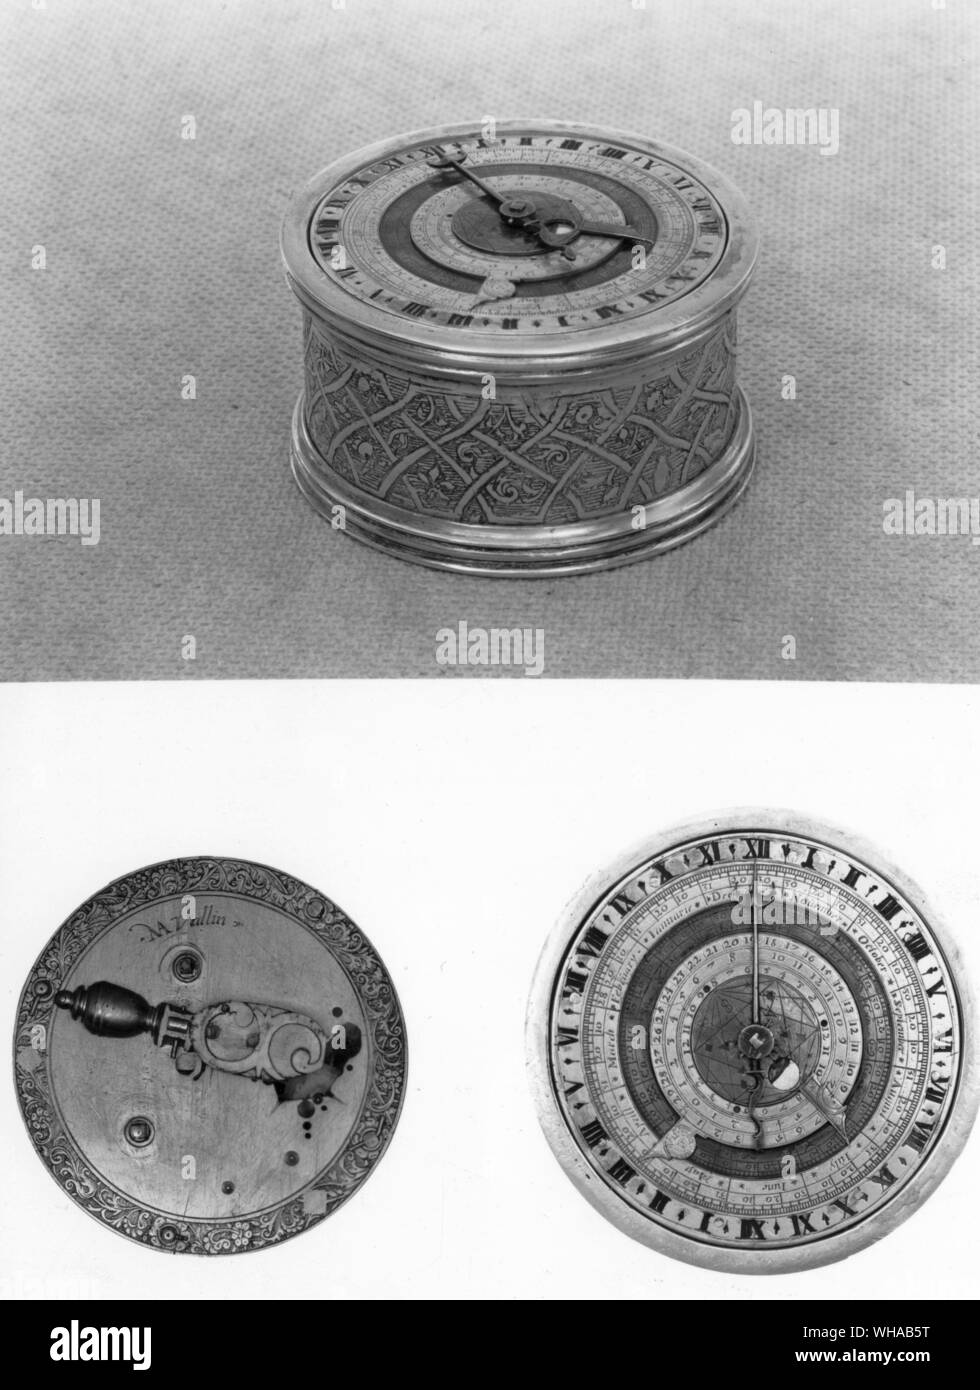 A forma di tamburo orologio da tavolo da N Vallin con quadrante astronomico Foto Stock